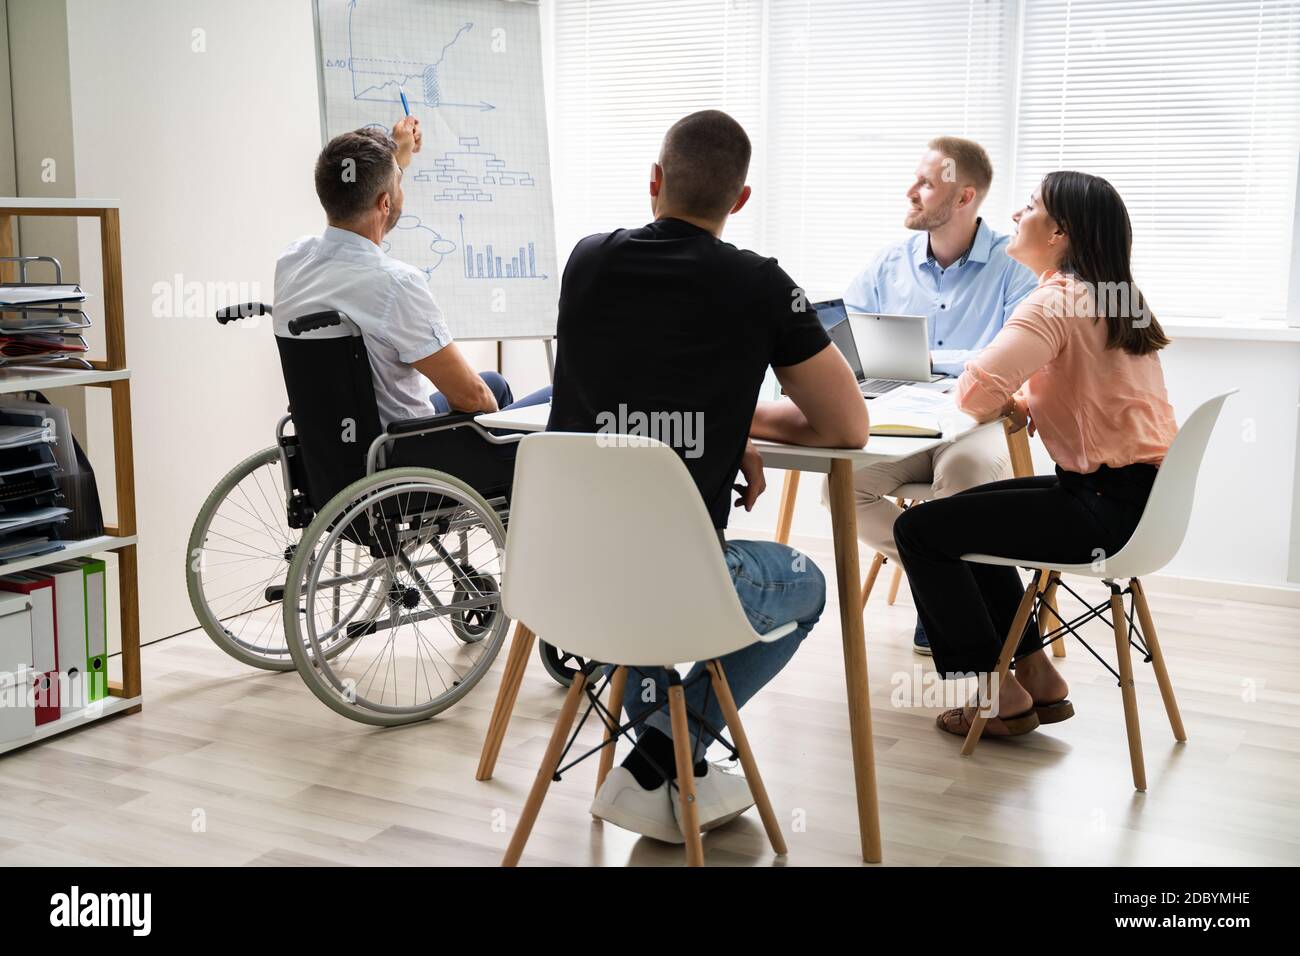 Rollstuhl Und Behinderung Im Büro. Präsentation Bei Der Arbeit  Stockfotografie - Alamy